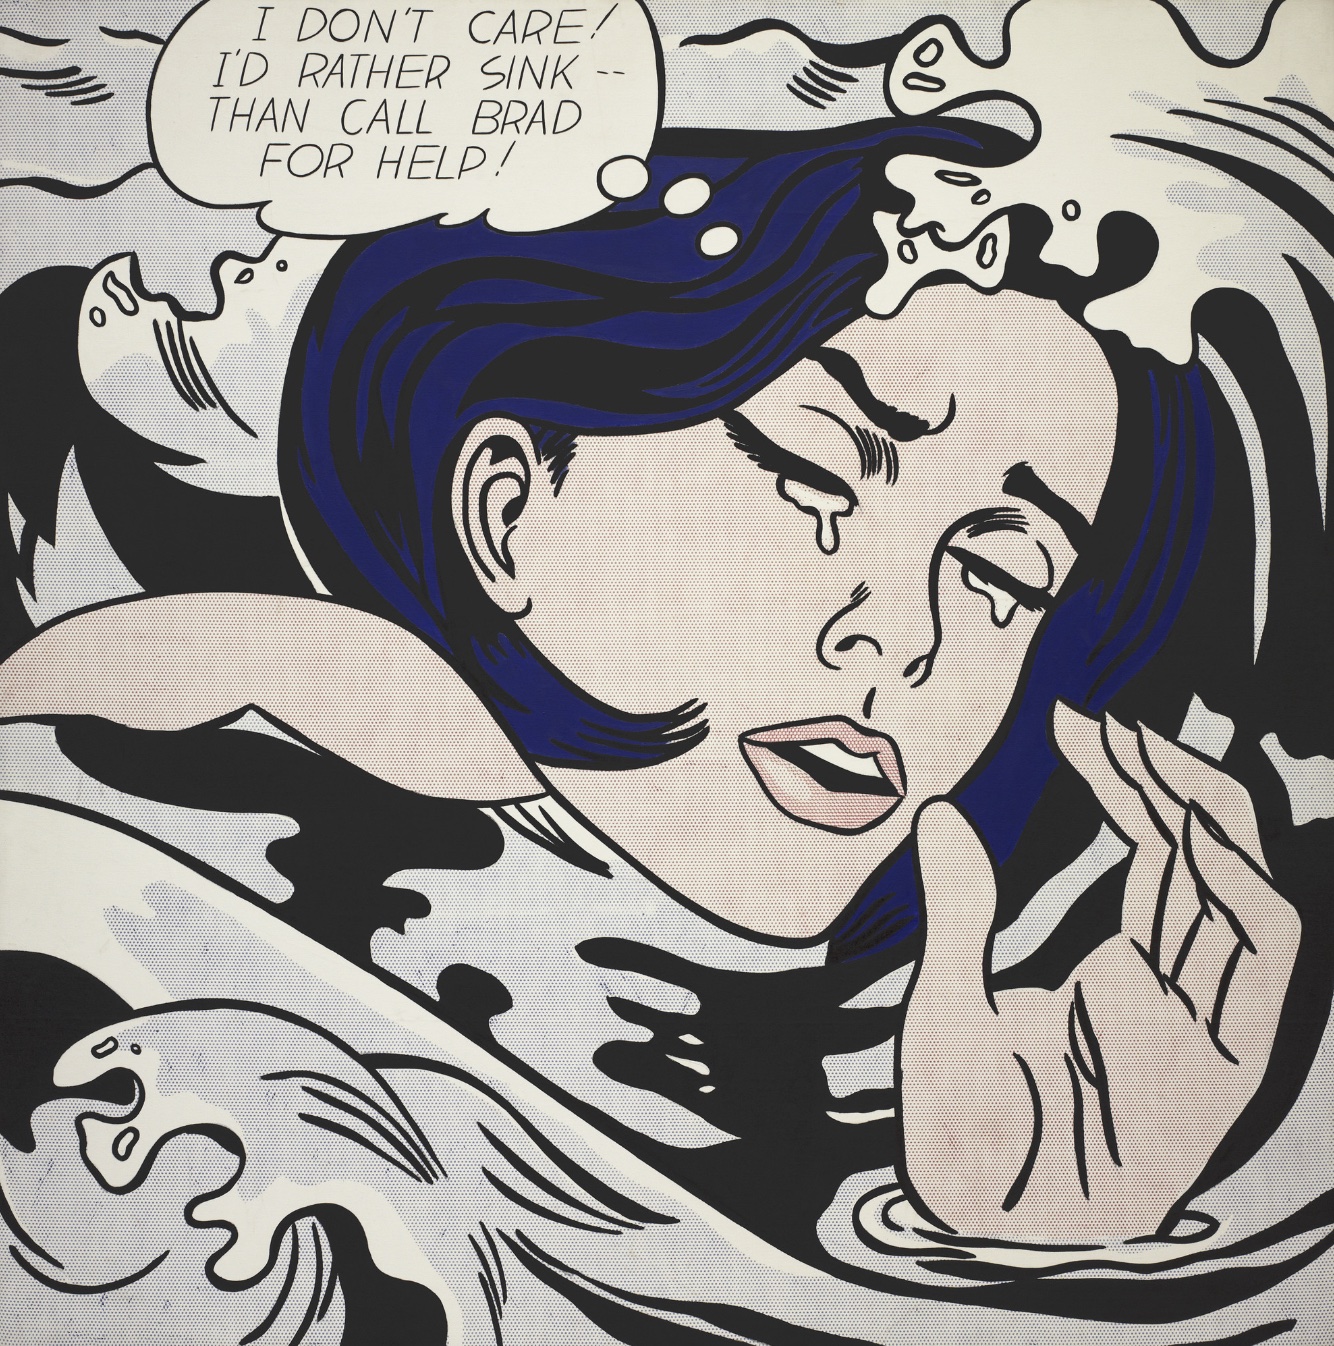 Drowning Girl von Roy Lichtenstein – es zeigt das Bild einer weinenden Frau aus dem obigen Comic.